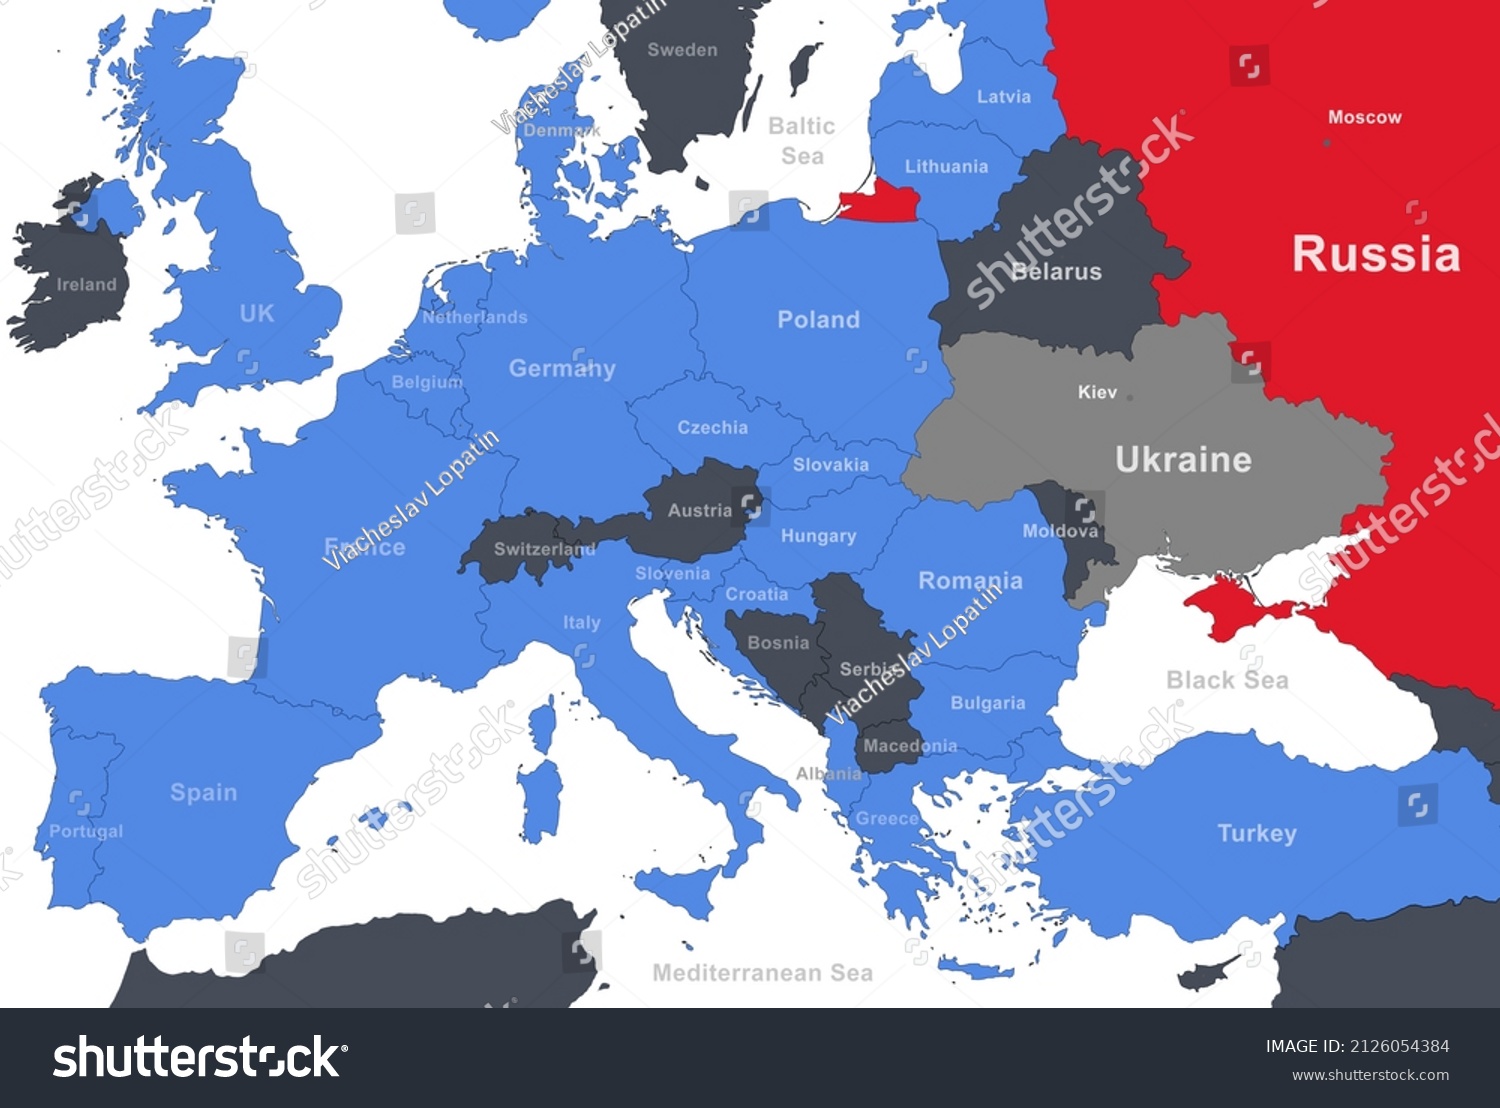 Nato Vs Russia Map 2022